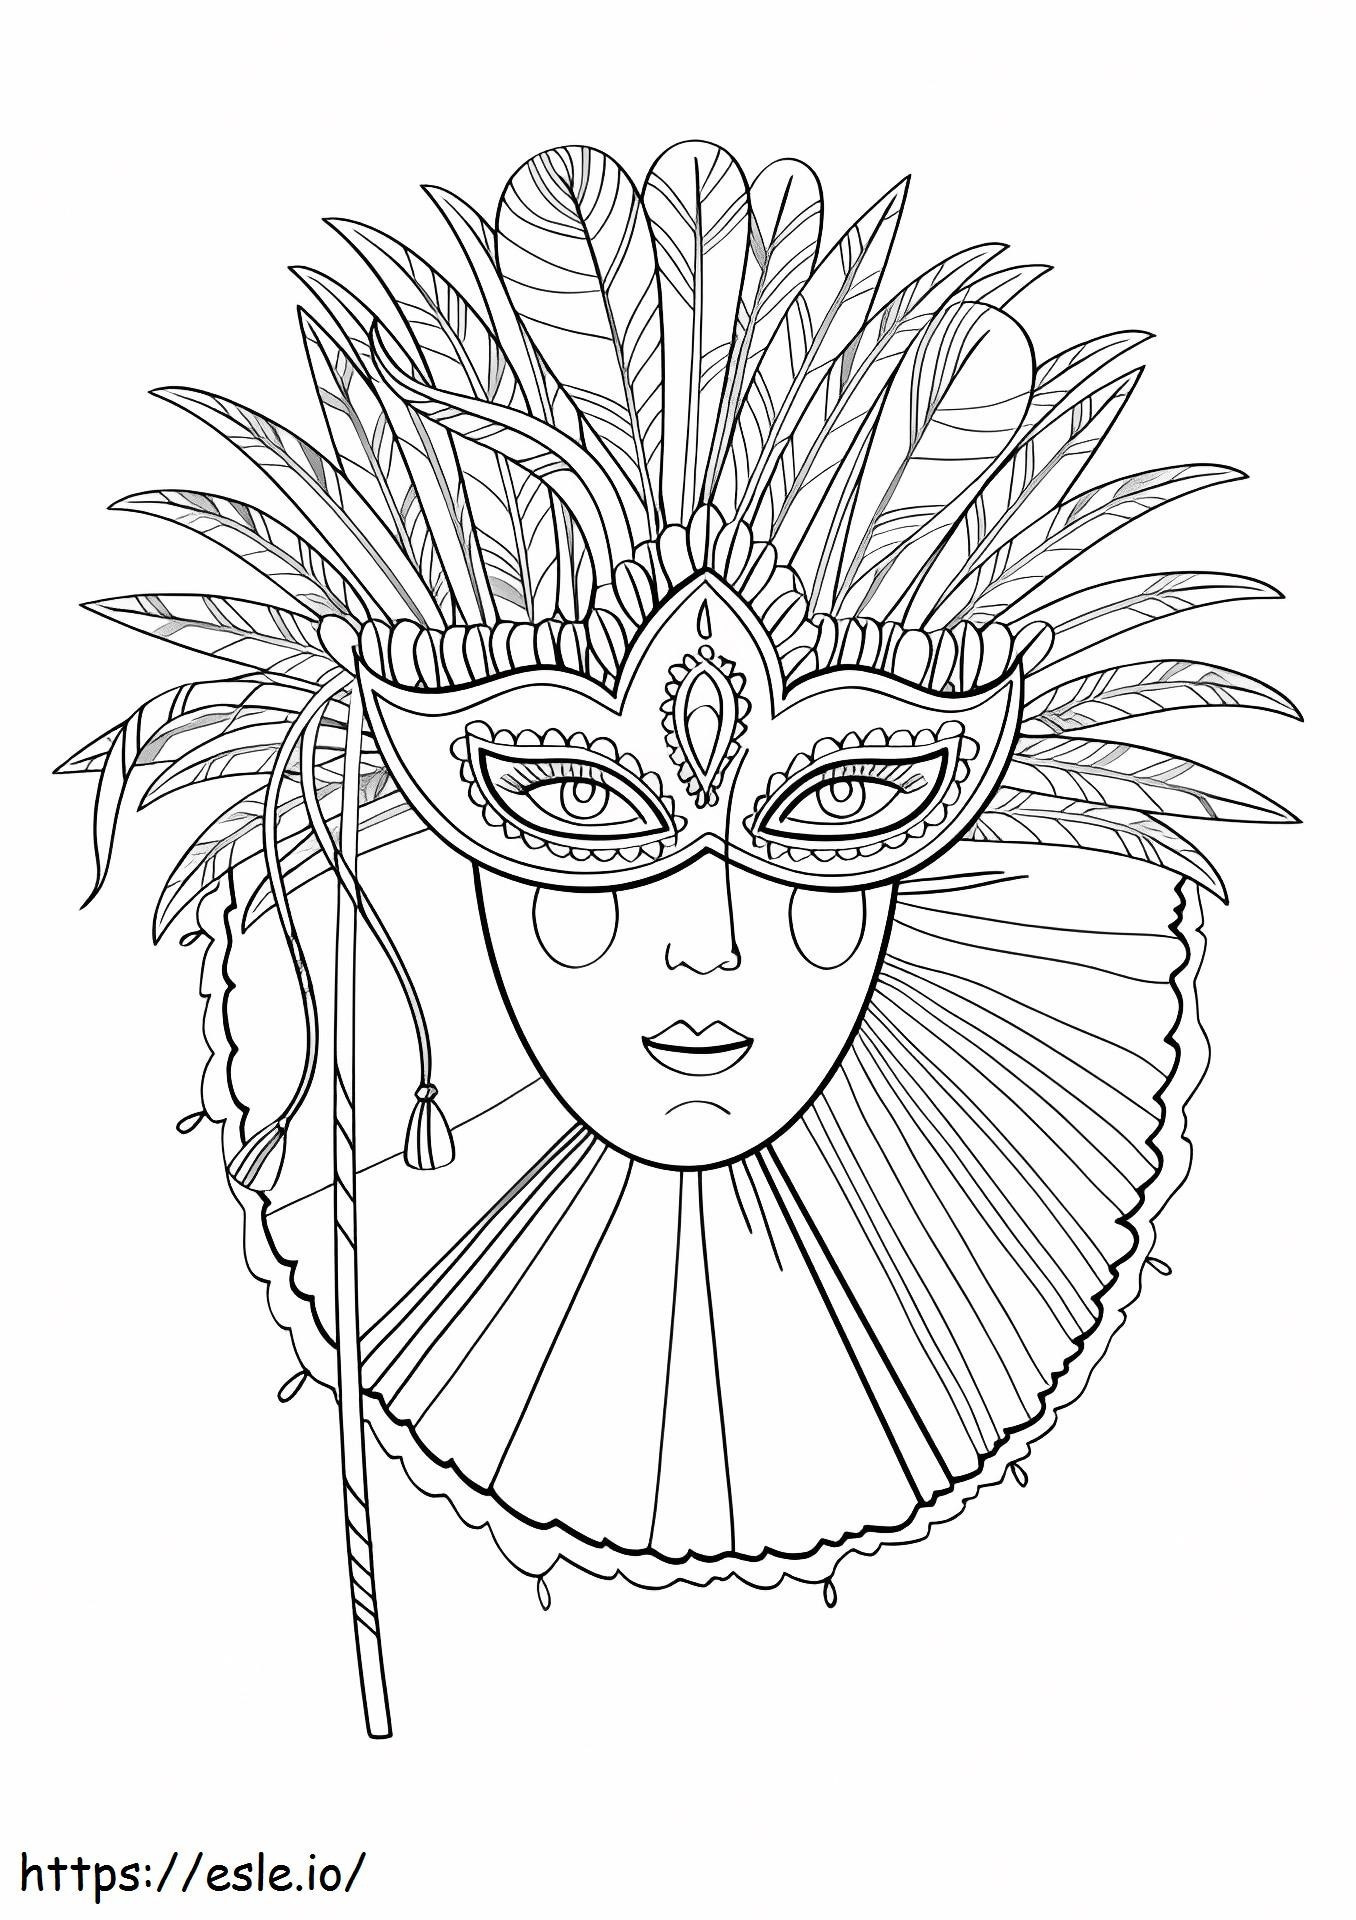 1527062019_Máscara de Carnaval para colorir